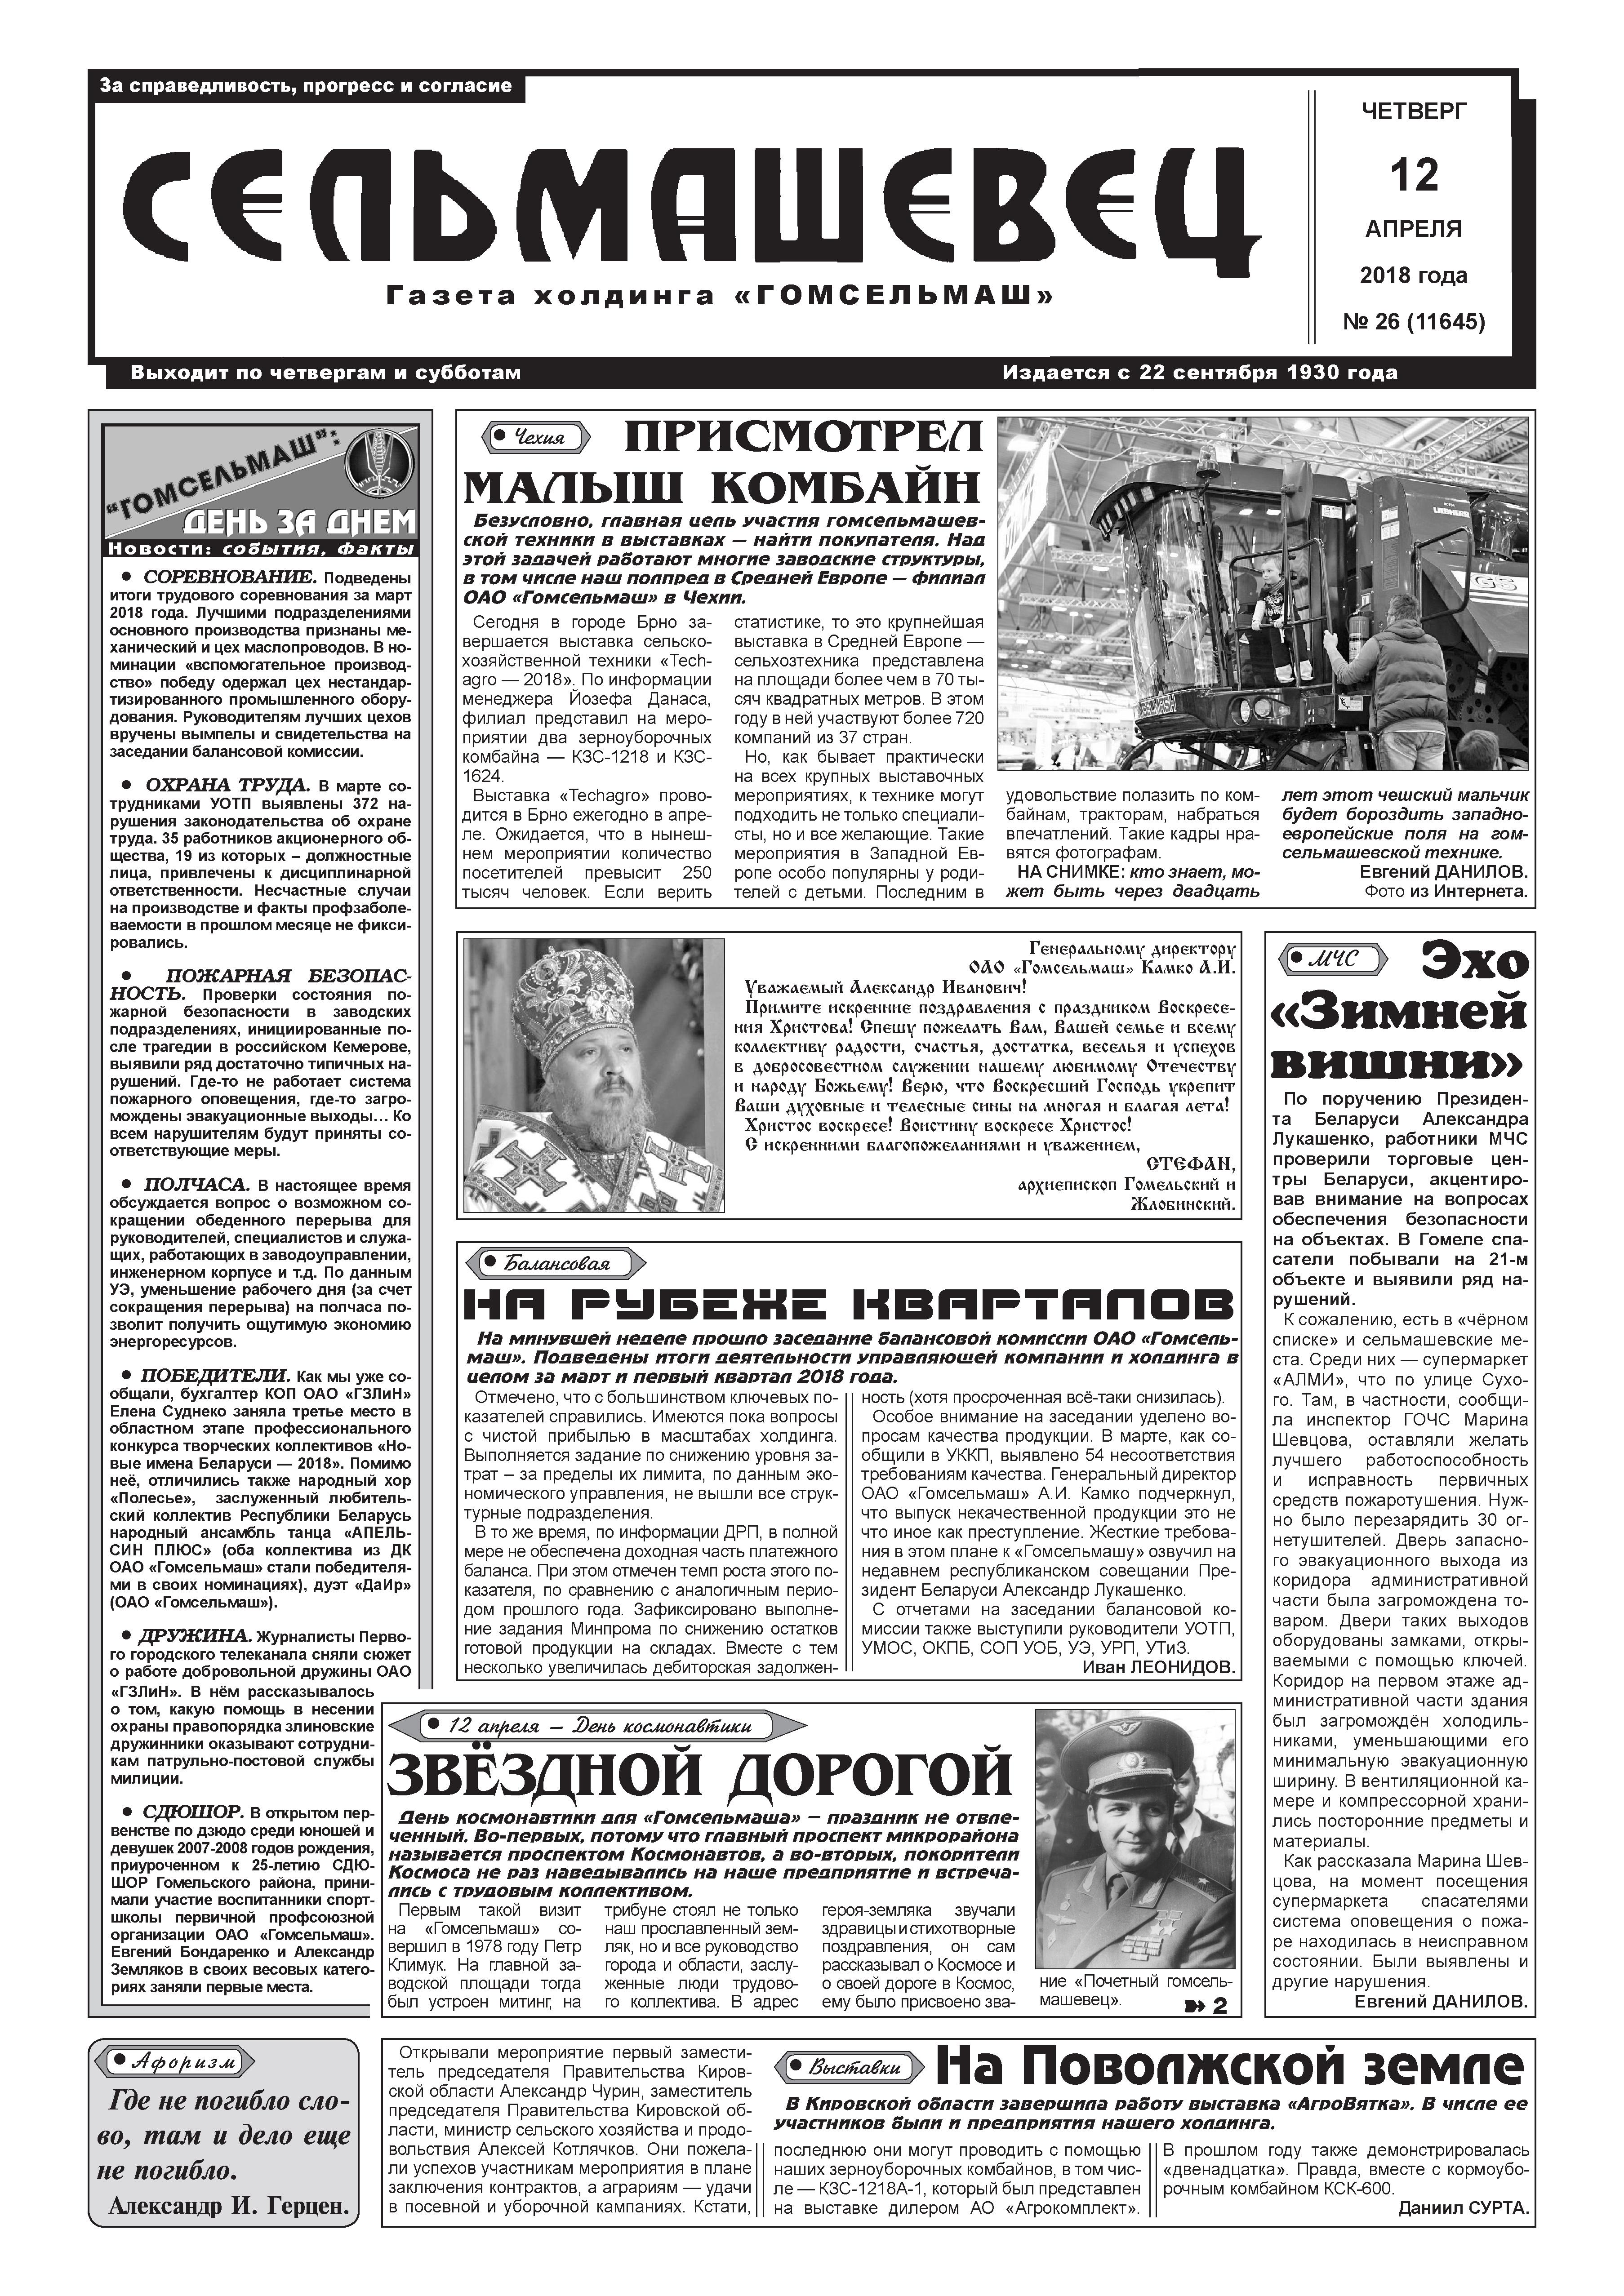 Гомель. Статья в газете "Сельмашевец" от 12.04.2018